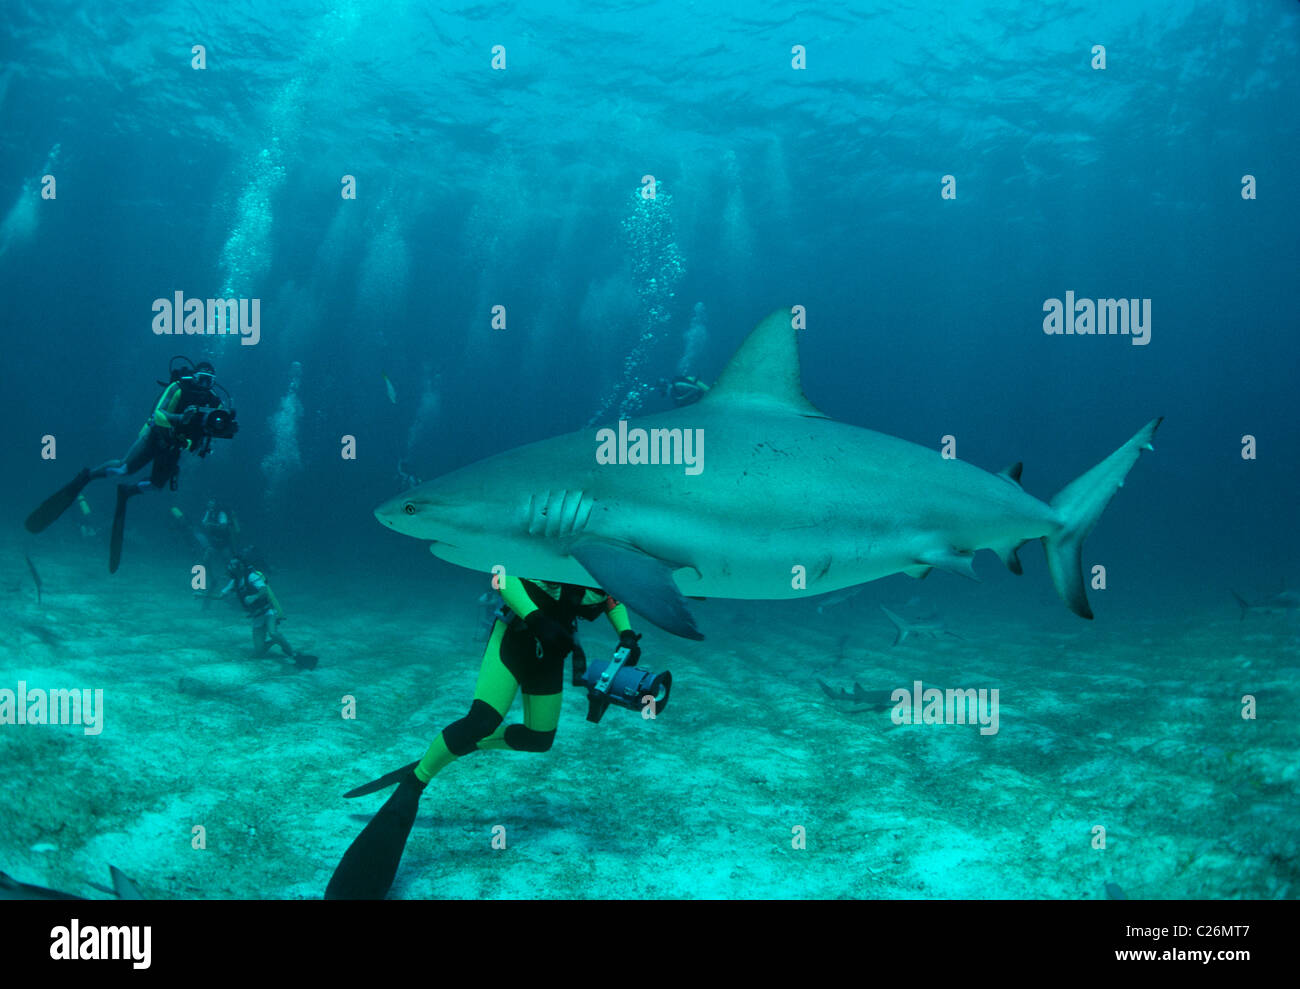 Les amateurs de plongée sous-marine photographie requin de récif des Caraïbes (Carcharhinus perezi). Walker's Cay, Bahamas. Mer des Caraïbes Banque D'Images